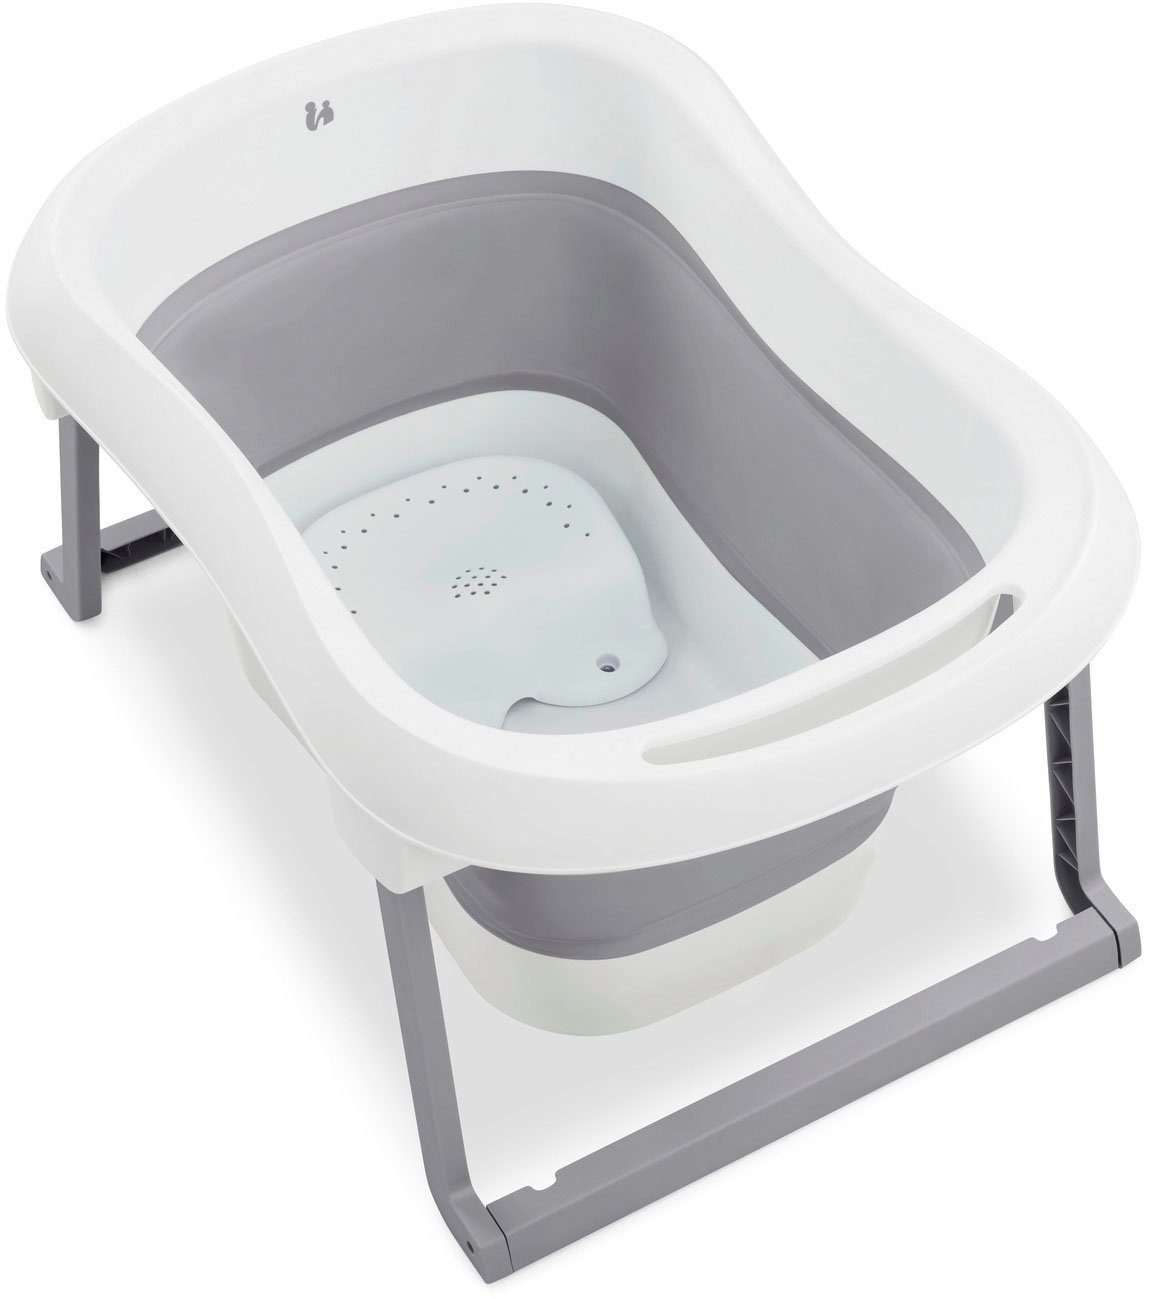 N L, White/Stone, Wassertemperaturmessung Babybadewanne am Ablaufstopfen Fold Wash Hauck mit Faltbadewanne